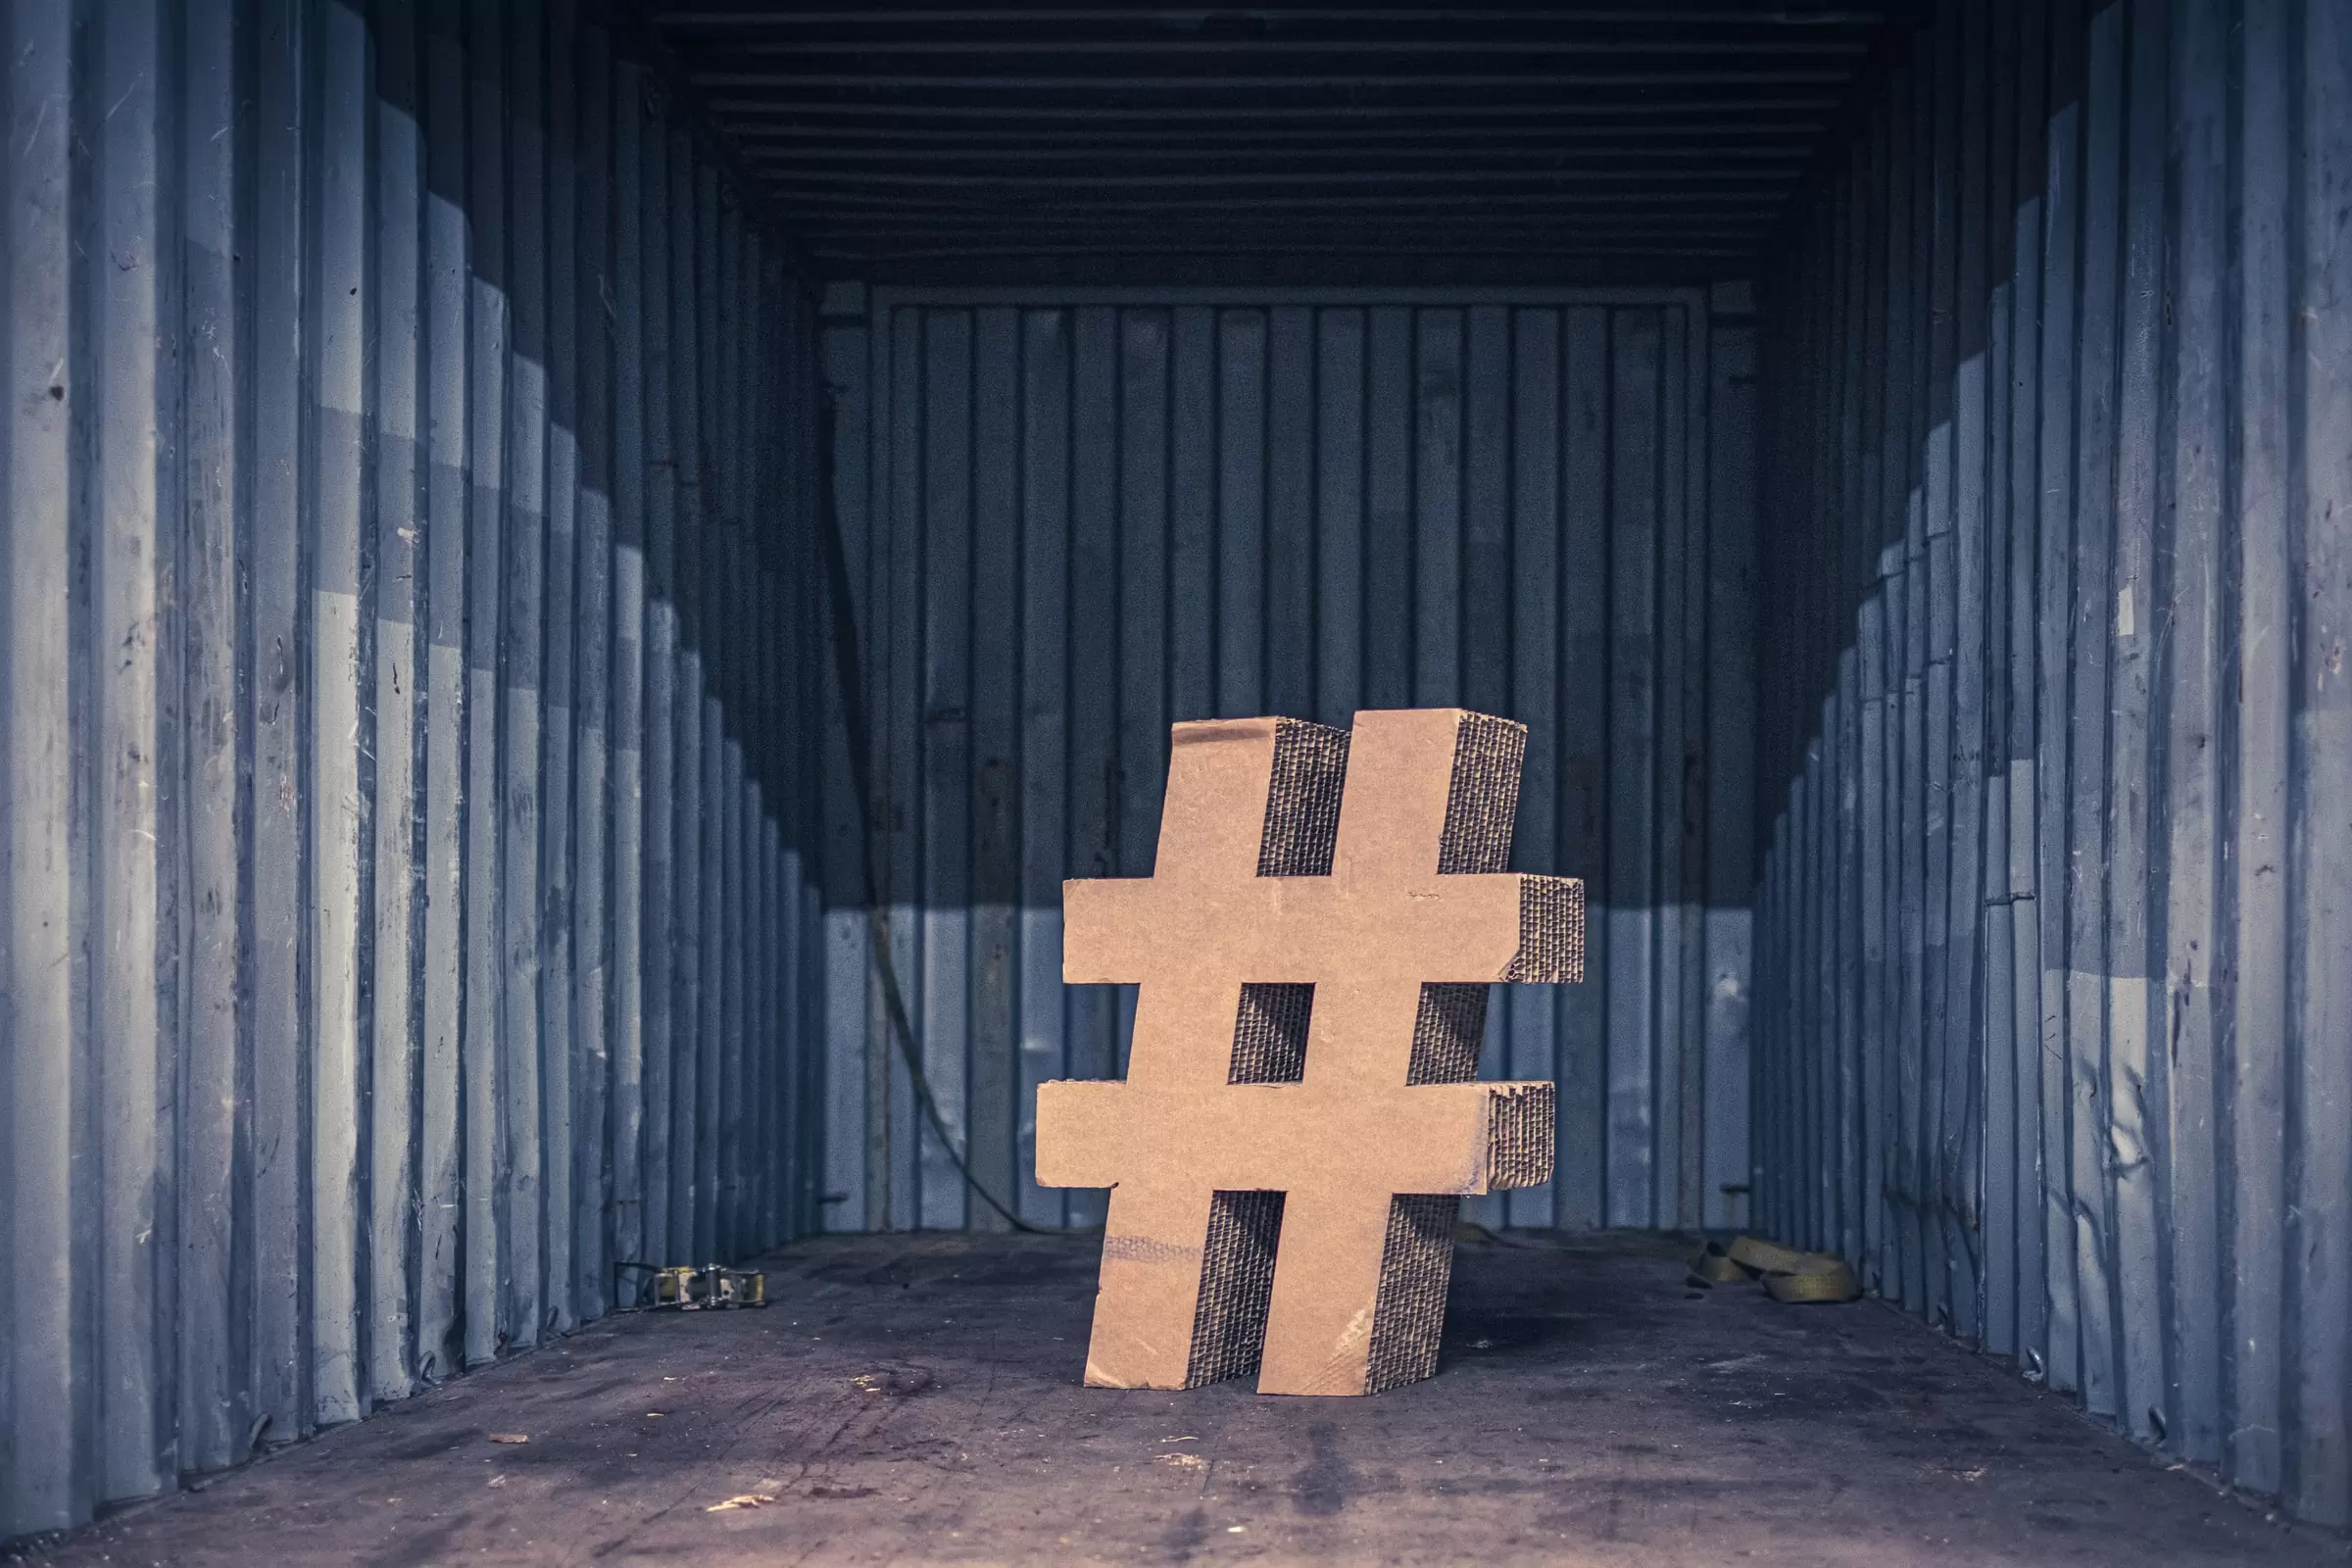 Comment utiliser le hashtag dans vos médias sociaux?